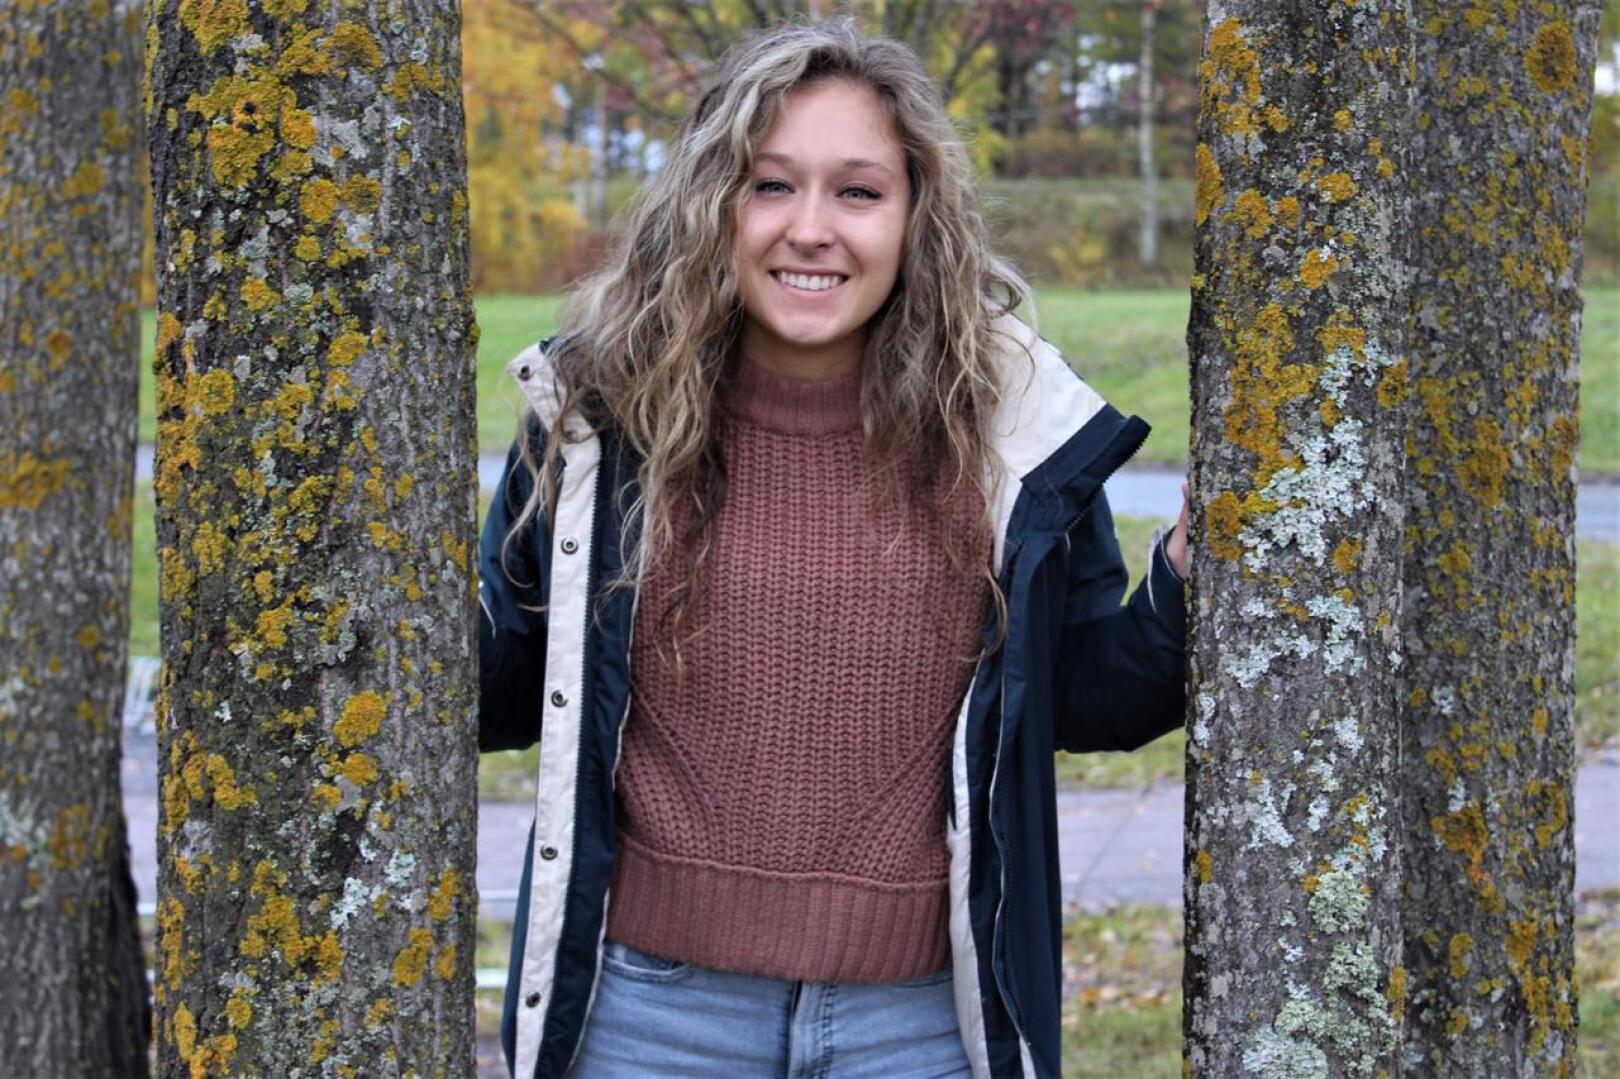 Yhdysvalloista Suomeen muuttanut vaihto-opiskelija Emma Styers on saanut Suomessa hengähdystauon kotiläksyistä.